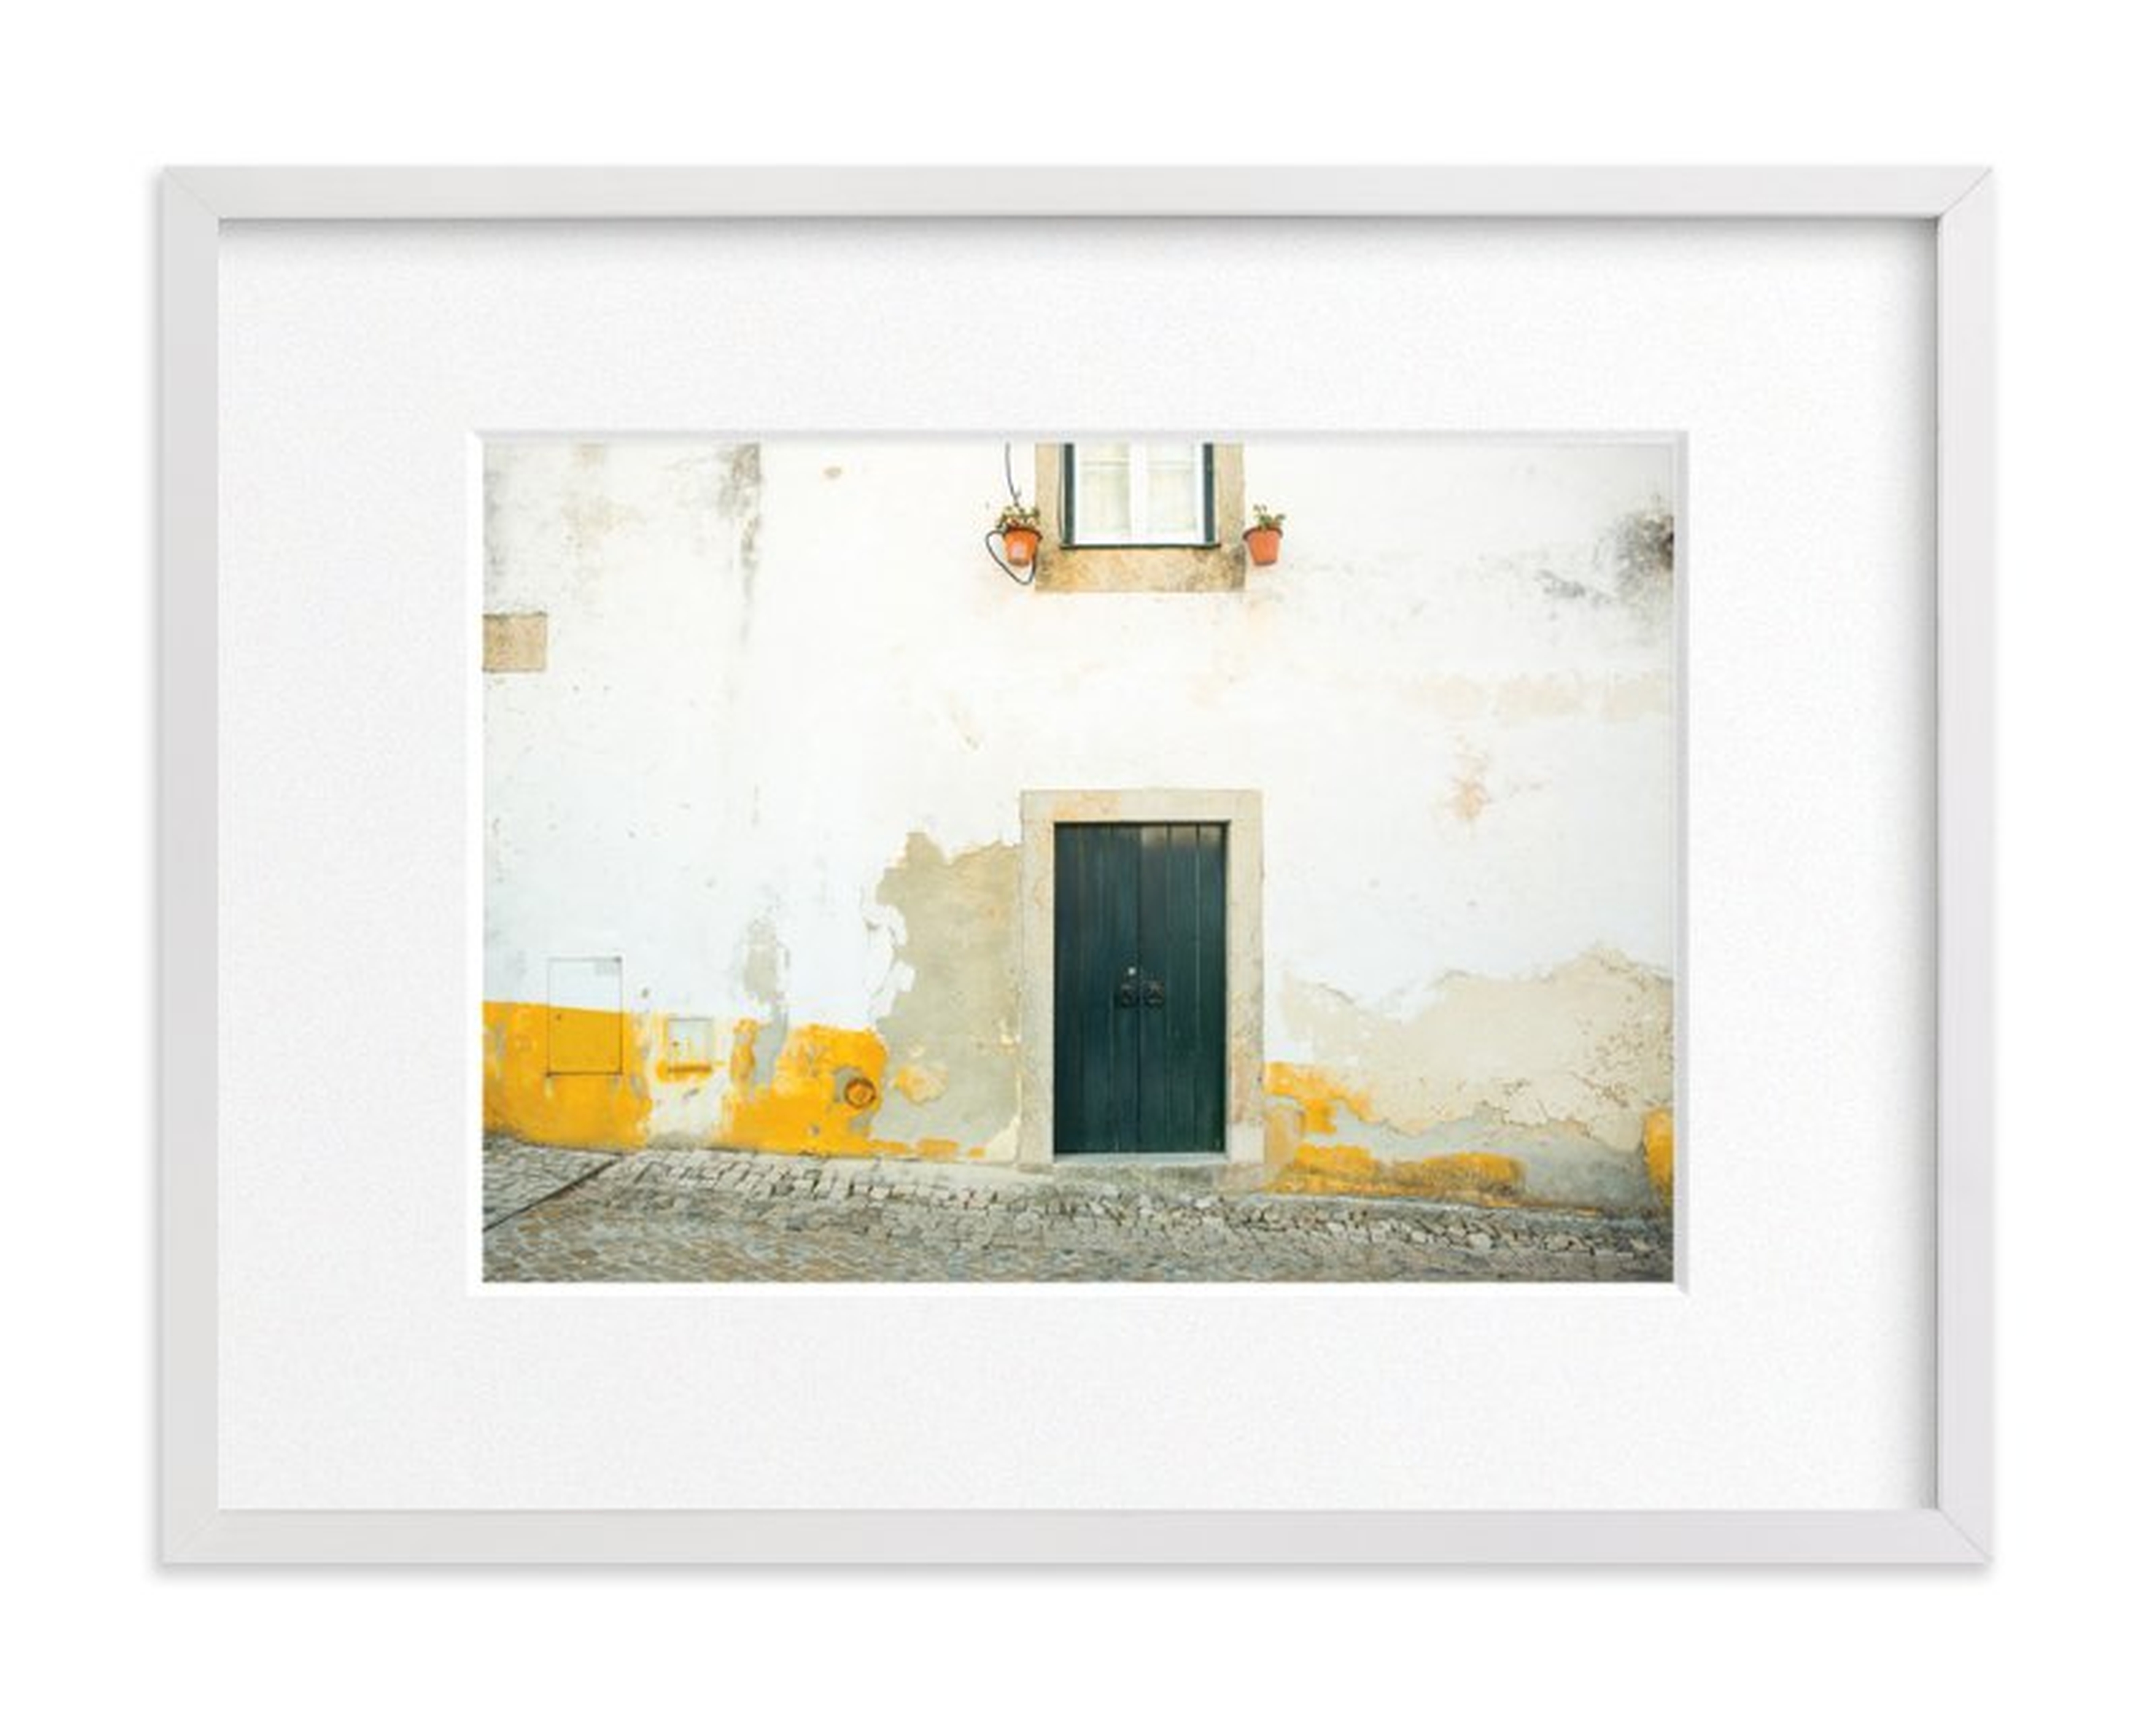 óbidos  - 18" x 24"-  white wood frame, white border - Minted